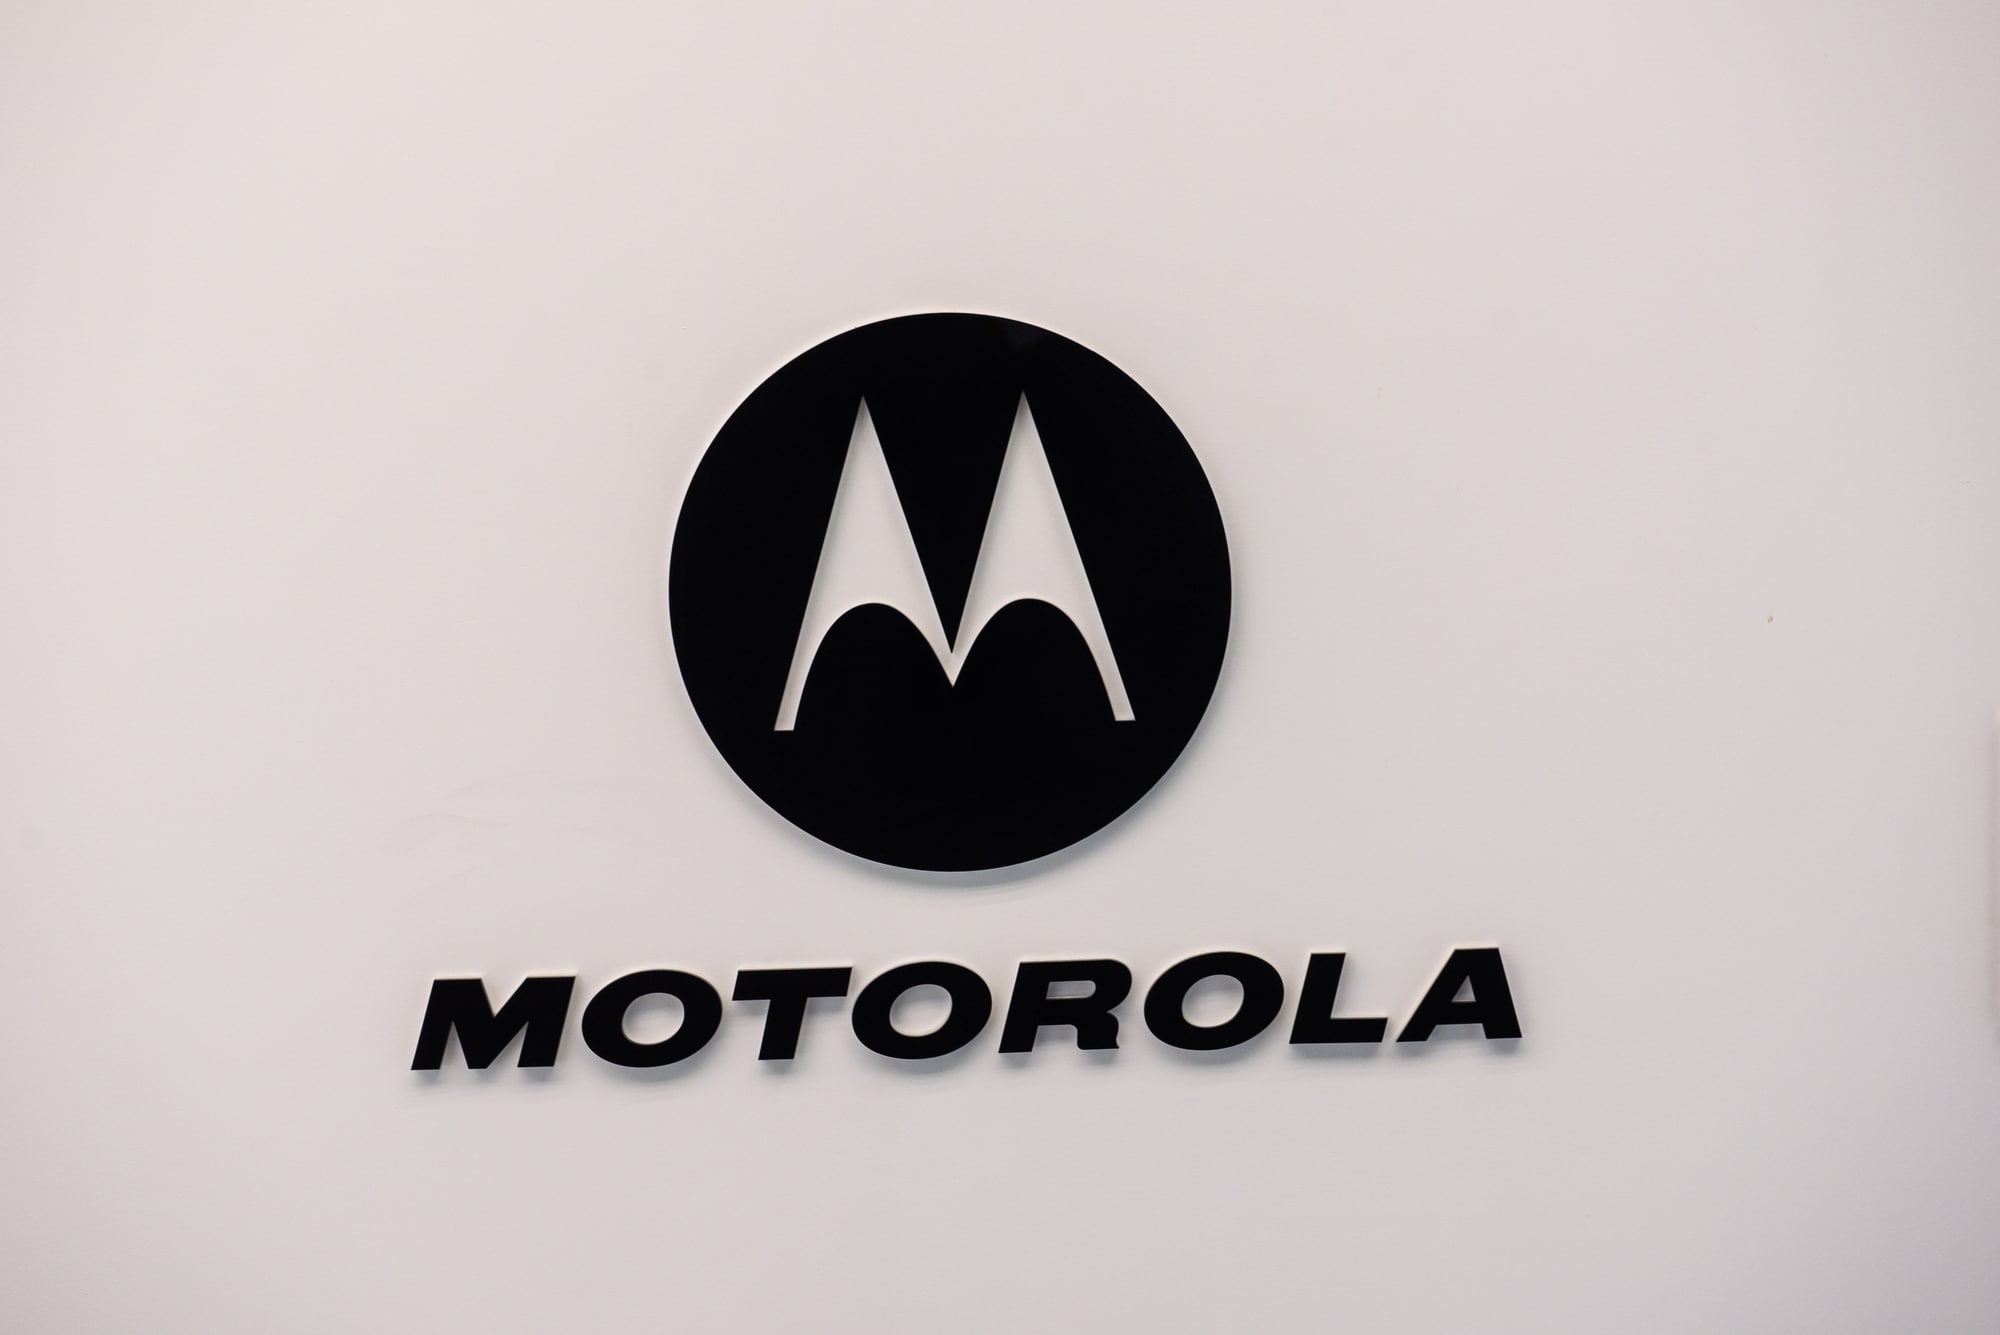 Motorola è lo sponsor della nuova edizione della Partita del Cuore thumbnail